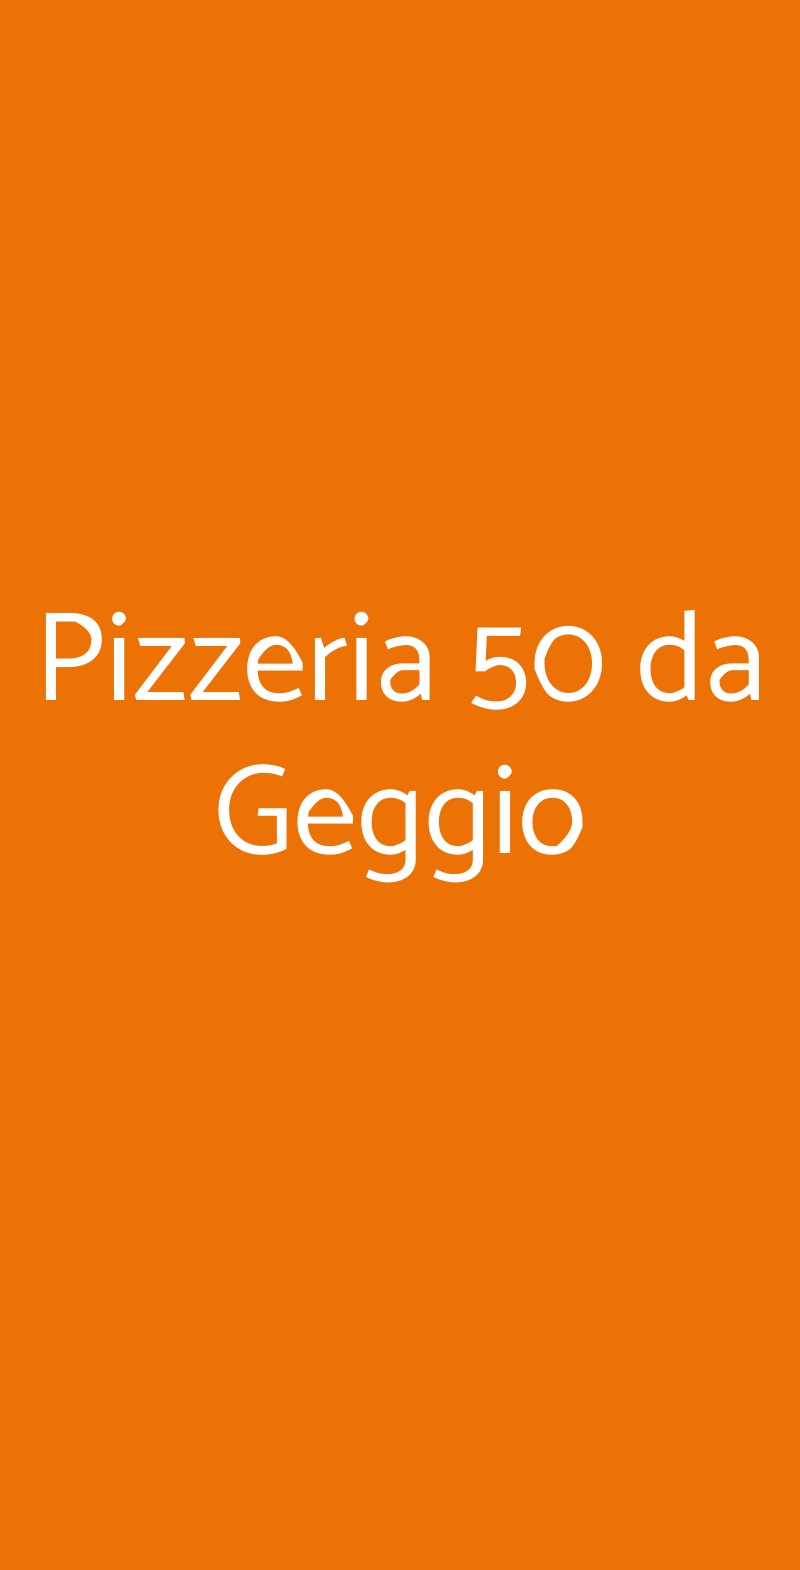 Pizzeria 50 da Geggio Milano menù 1 pagina